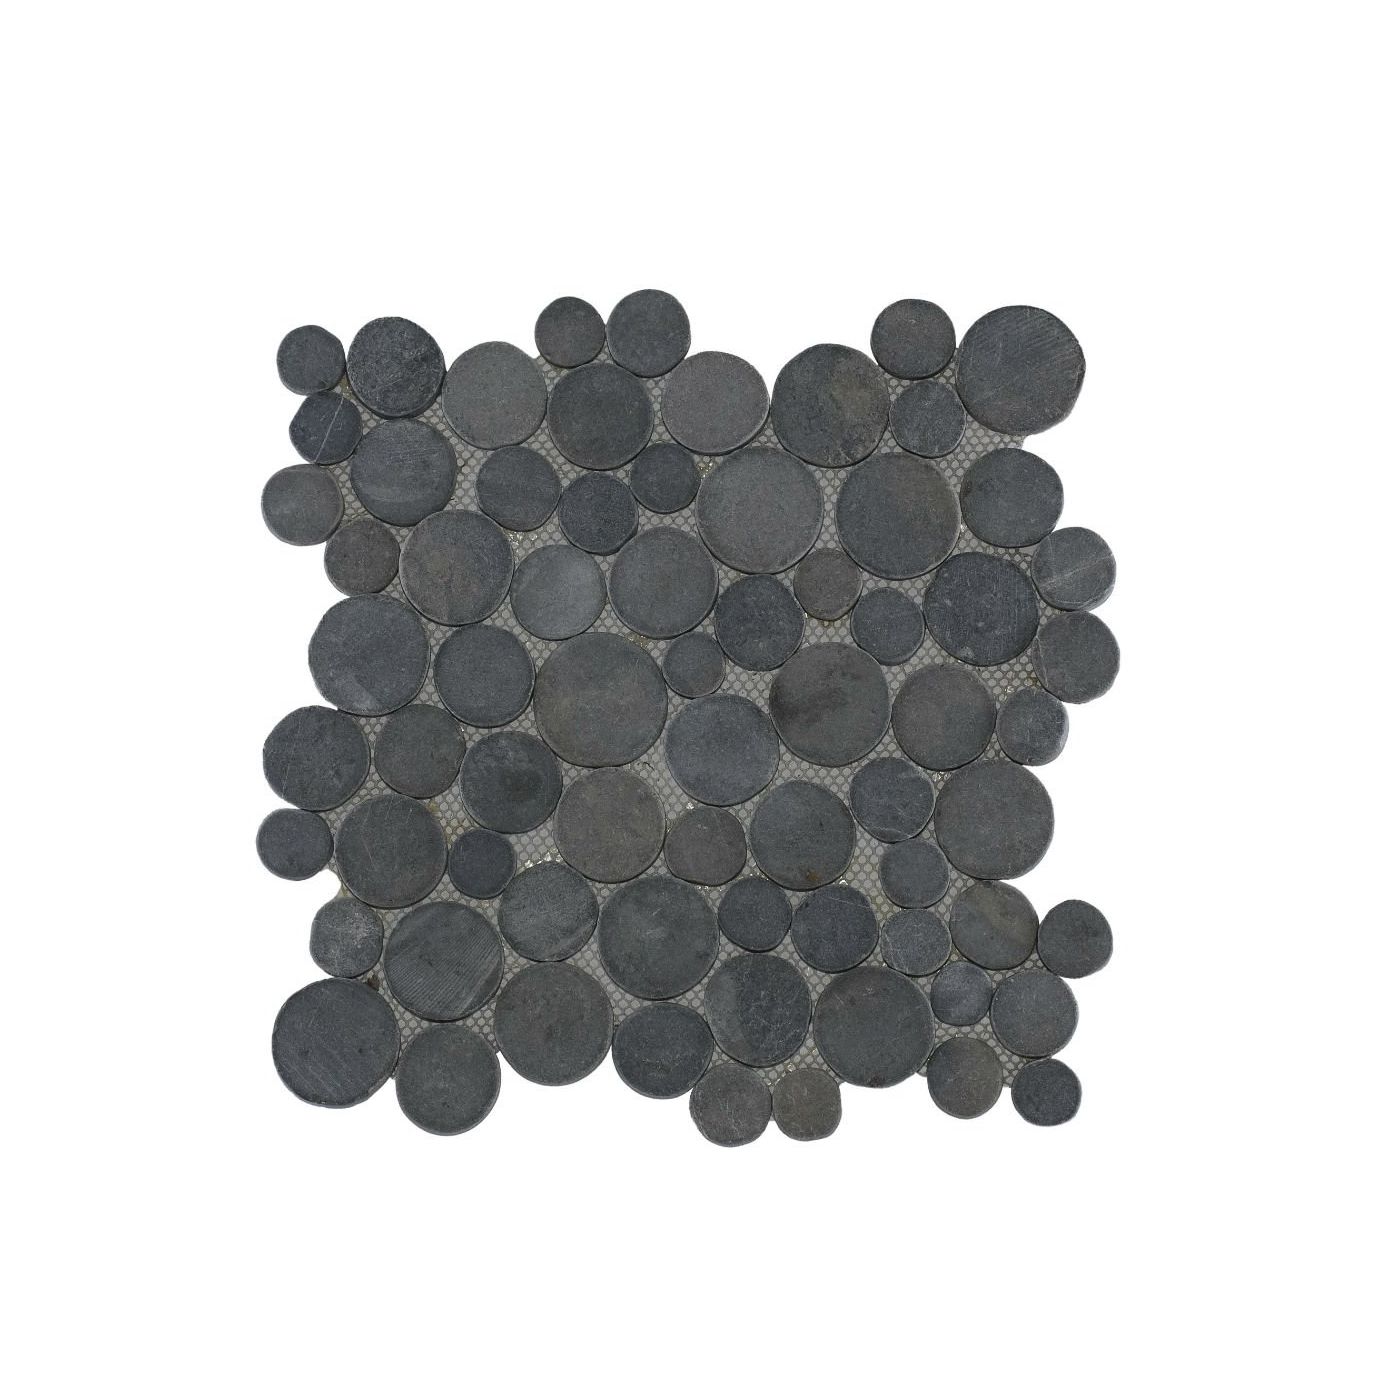 Stabigo Mosaic Coin 30×30 Grey